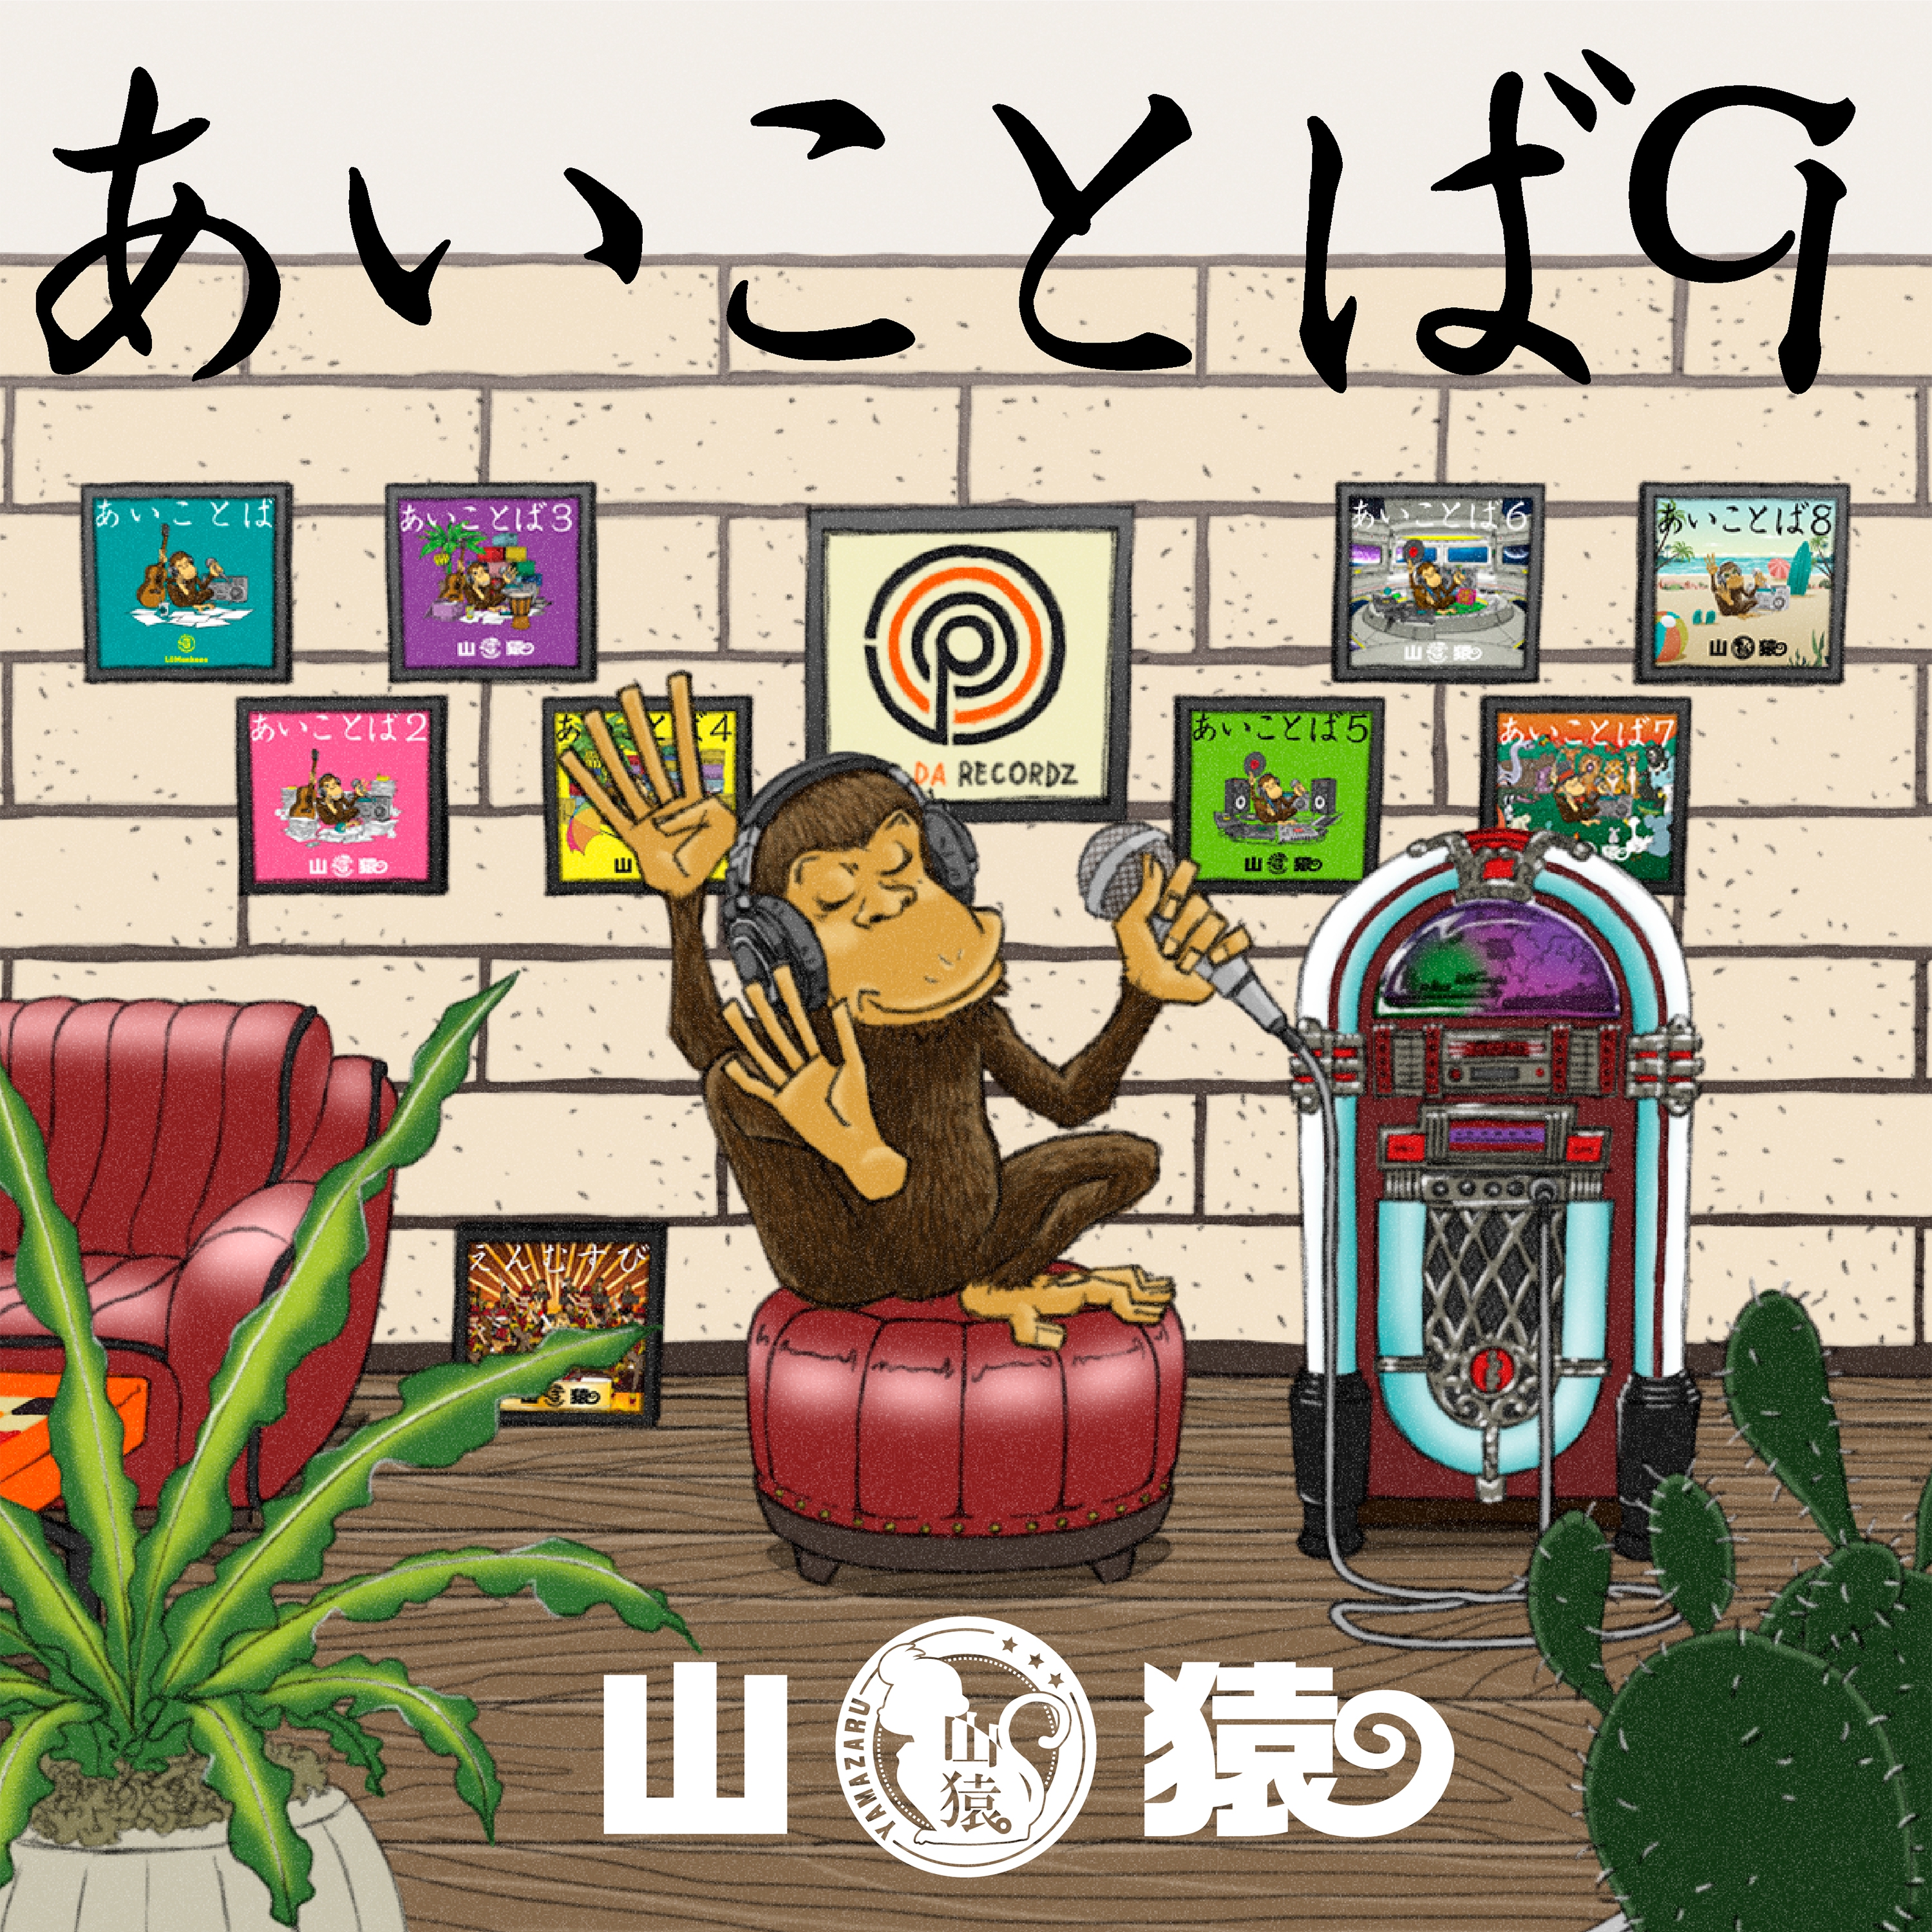 2022.11.22リリース山猿最新アルバム『あいことば9』にRafveryフィーチャリング曲収録決定！ | Rafvery Info